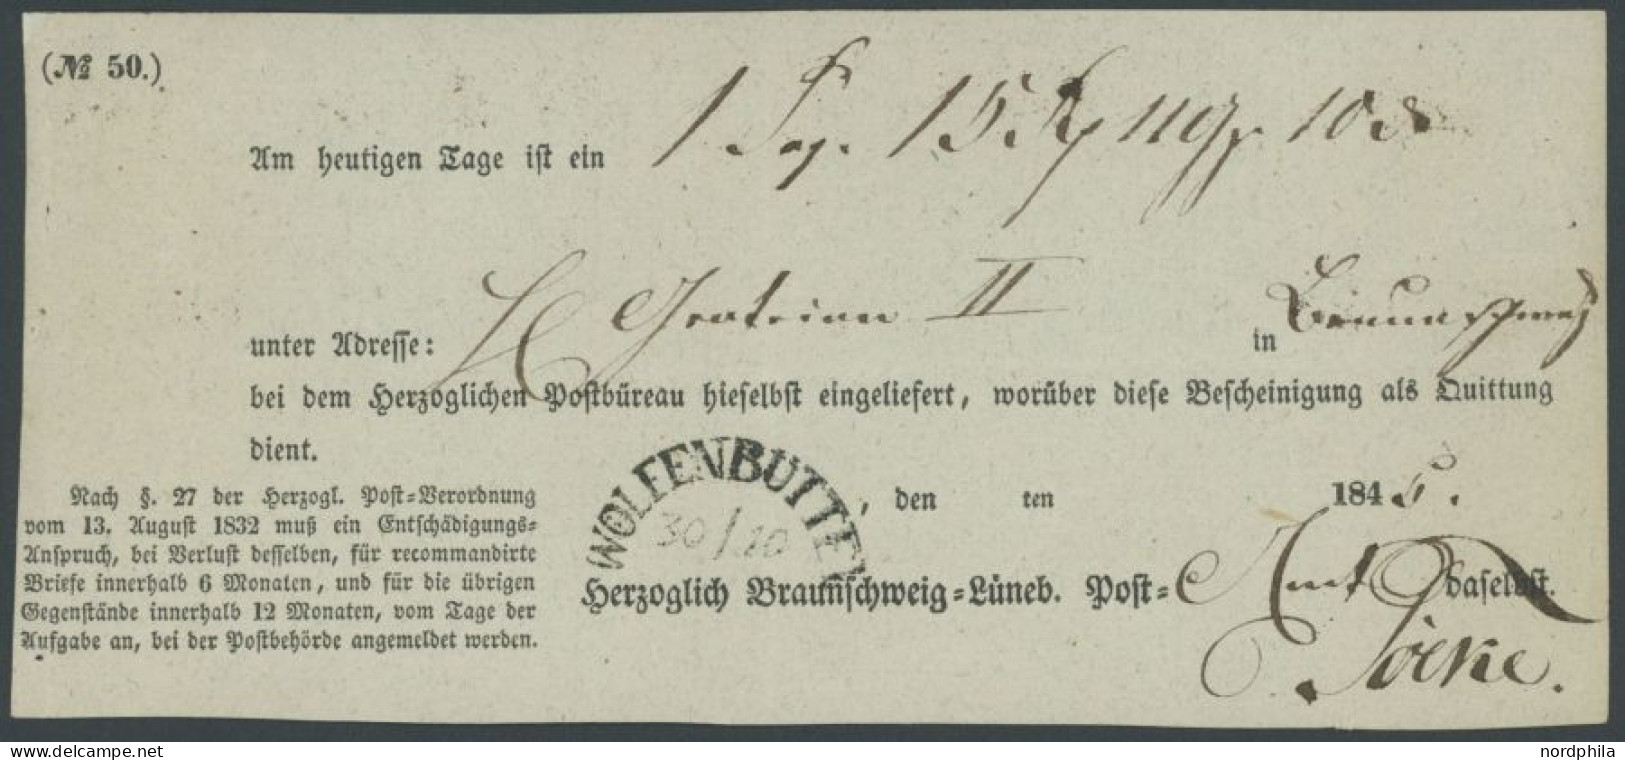 BRAUNSCHWEIG WOLFENBÜTTEL, Halbkreisstempel Auf Postschein (1845), Herzoglich Braunschweig Lüneb. Post, Pracht - Prefilatelia